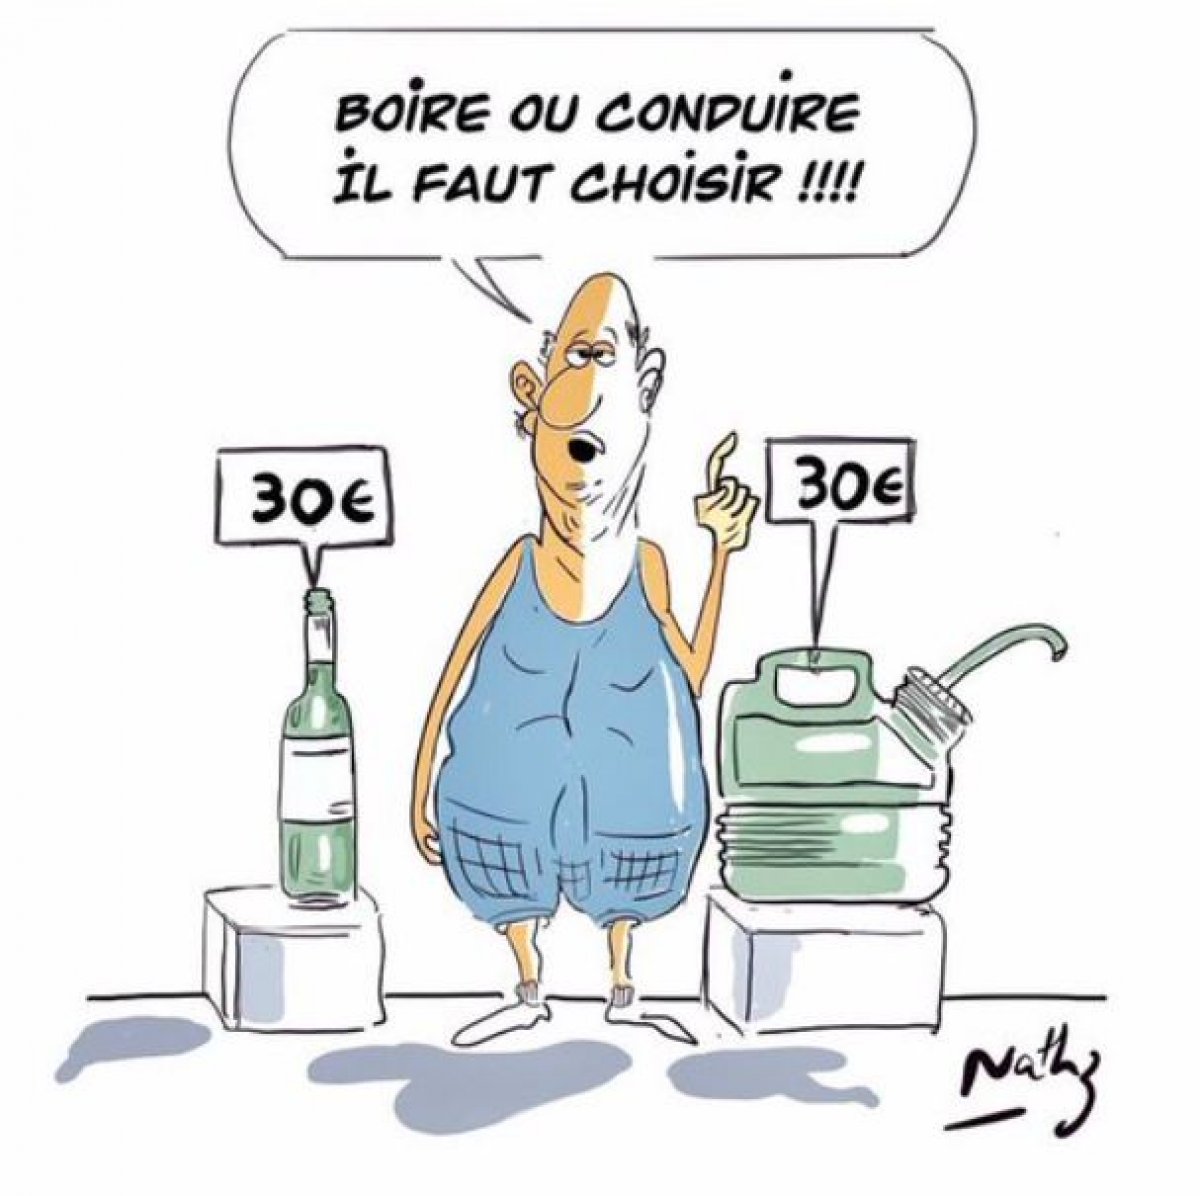 Fransa da akaryakıt fiyatına karikatürlü tepki #1